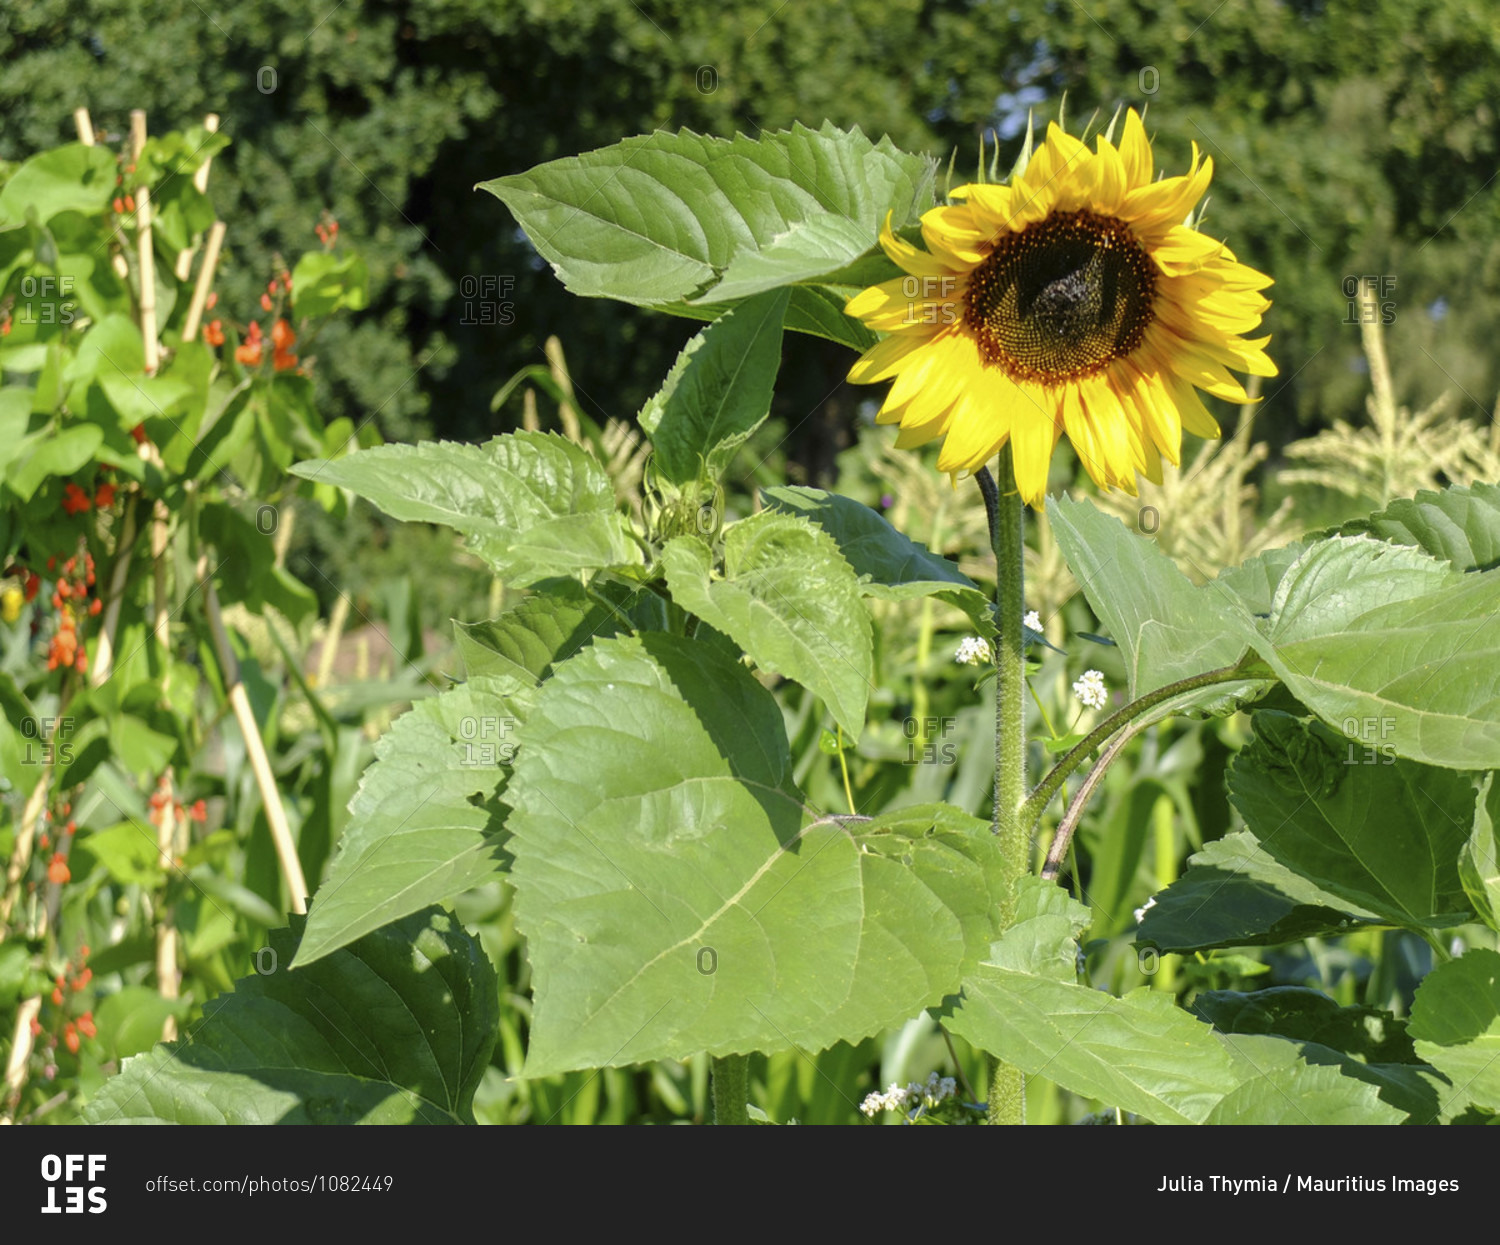 Sunflower (Helianthus annuus) in the garden, portrait